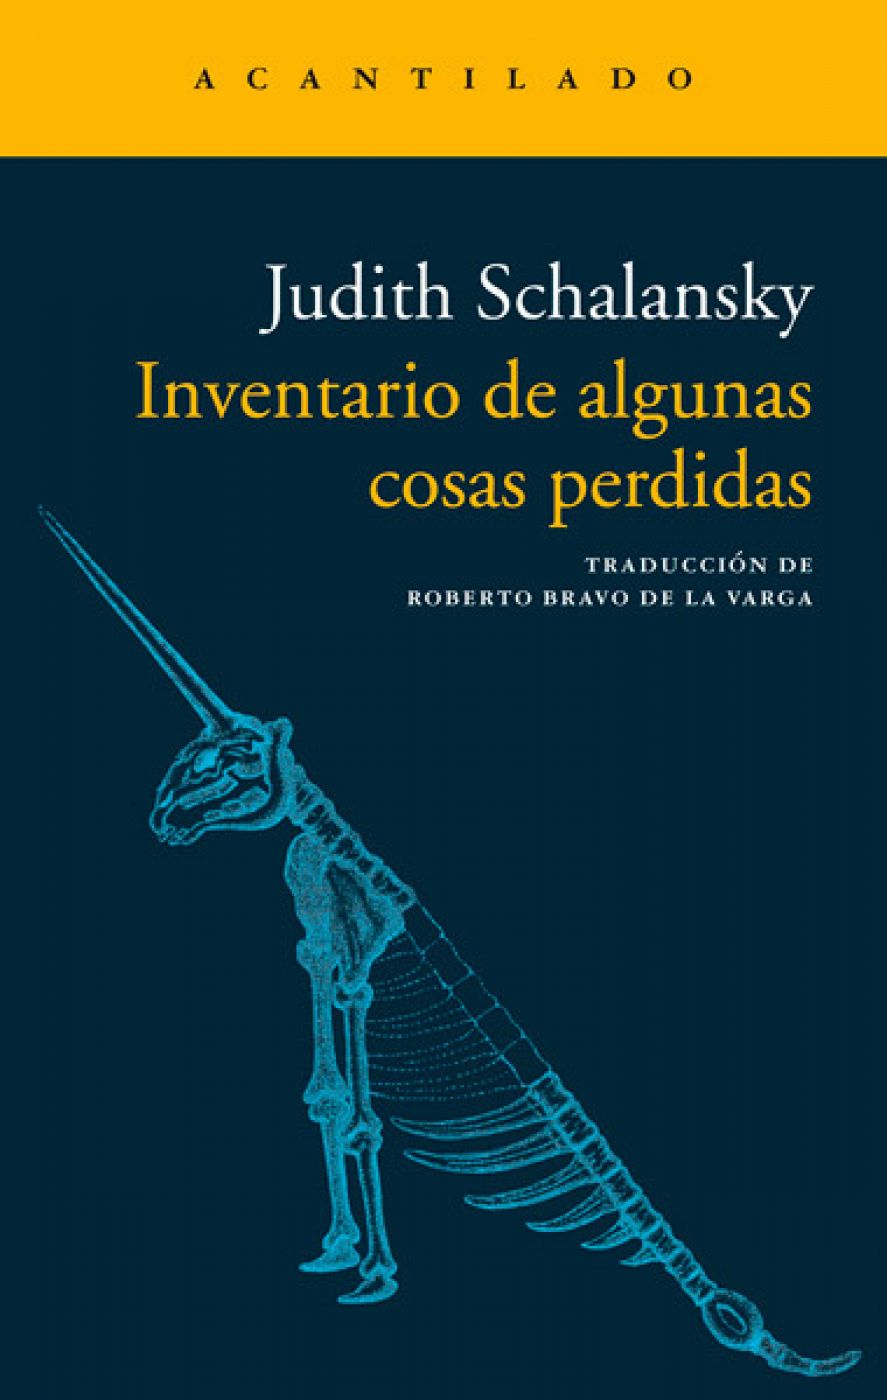 Inventario de algunas cosas perdidas (Acantilado), de Judith Schalansky y traducción de Roberto Bravo de la Varga